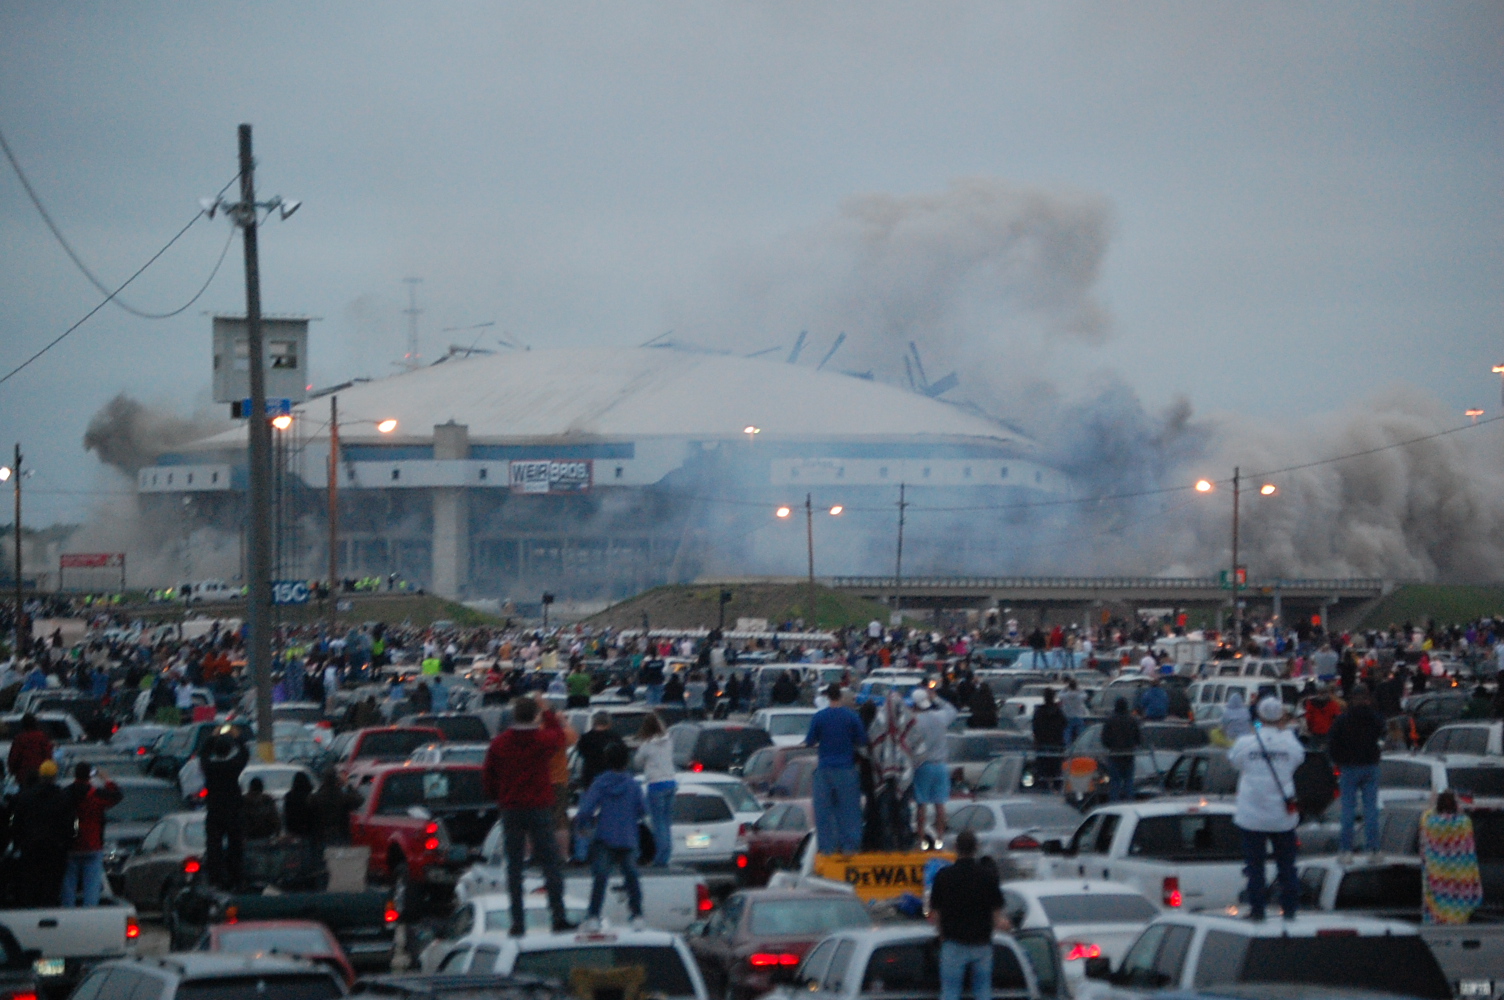 Stadium Implosion